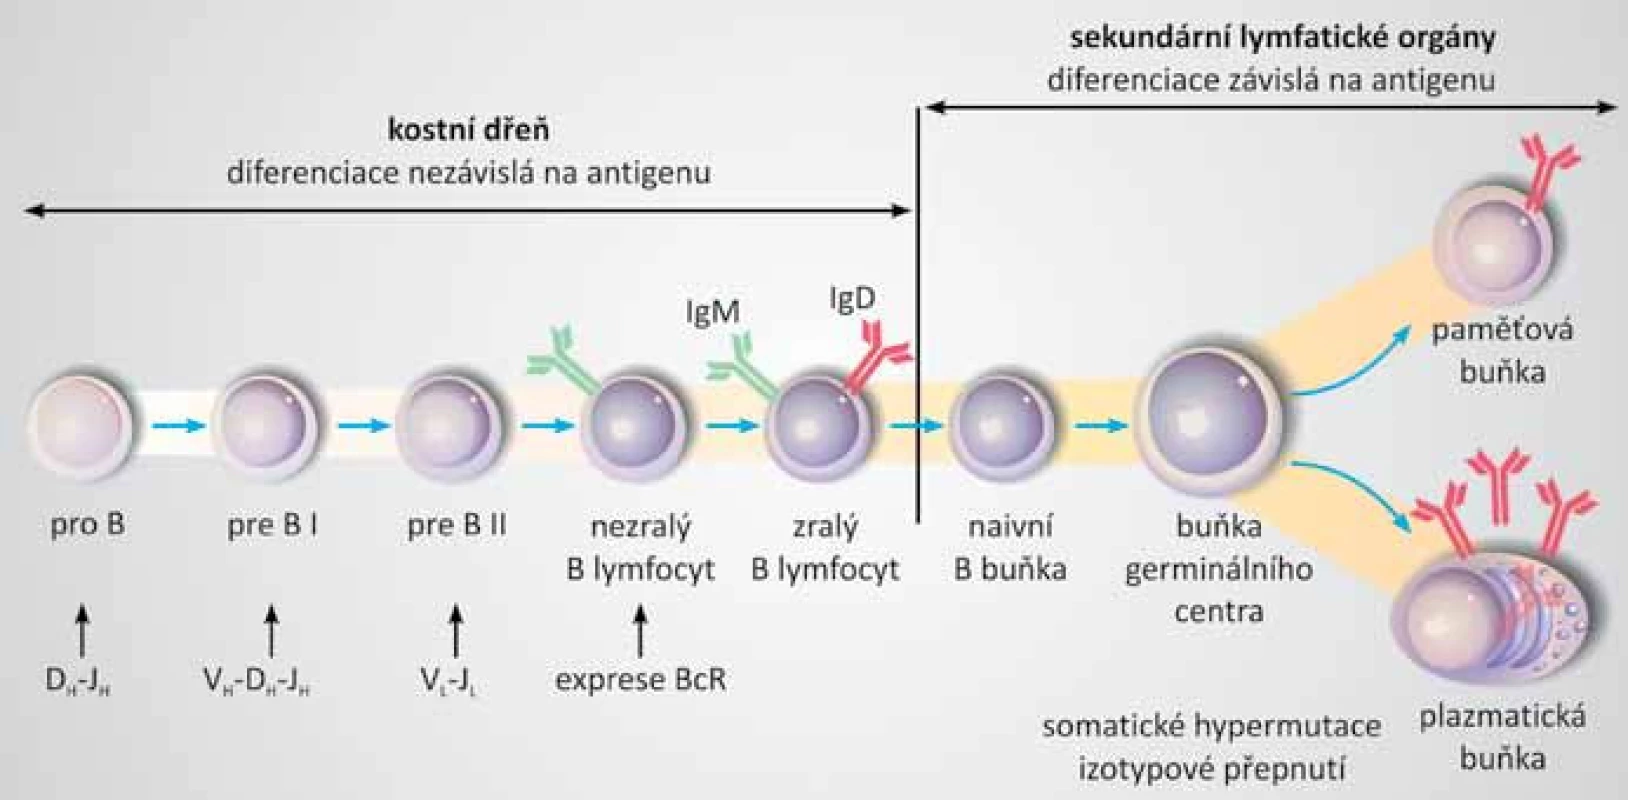 Vývoj B lymfocytu. 
Prekurzorový B lymfoblast v kostní dřeni prodělává přeskupování genových segmentů genů pro imunoglobuliny. Postupně zraje nezávisle na přítomnosti antigenu až do stadia nezralého B lymfocytu, který začíná exprimovat již přeskupený B buněčný receptor (BcR). Zralé B lymfocyty migrují krví do sekundárních lymfatických orgánů. Naivní B buňky osidlují primární lymfatické folikly a po aktivaci antigenem vytvářejí germinální centra. V germinálním centru podléhají B buňky somatickým hypermutacím variabilních úseků imunoglobulinů a izotypovému přepnutí. Vývoj B lymfocytu končí přeměnou na plazmatické buňky produkující protilátky a klidové paměťové buňky. Převzato a upraveno dle [3,37].